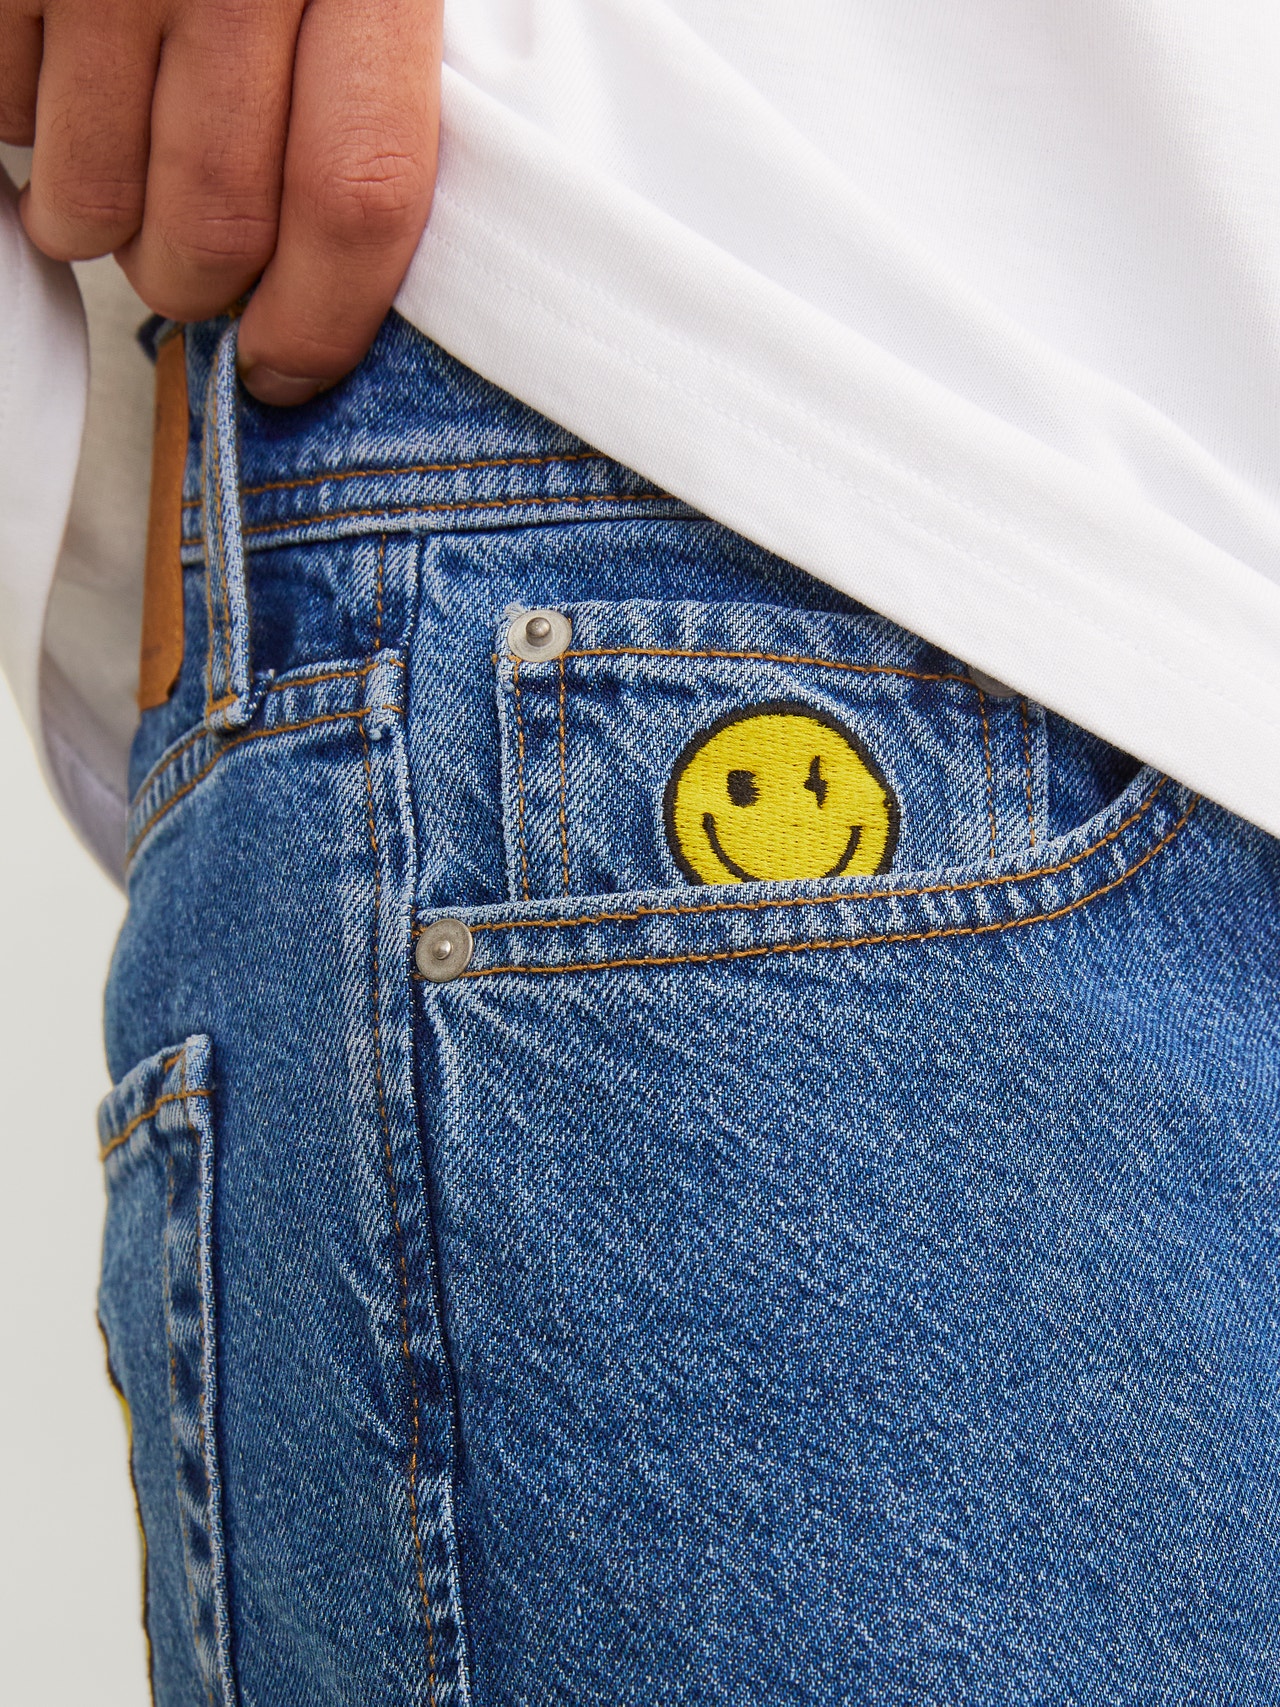 Jack & Jones JJIEDDIE JJORIGINAL SMILEY Loose fit jeans -Blue Denim - 12261744